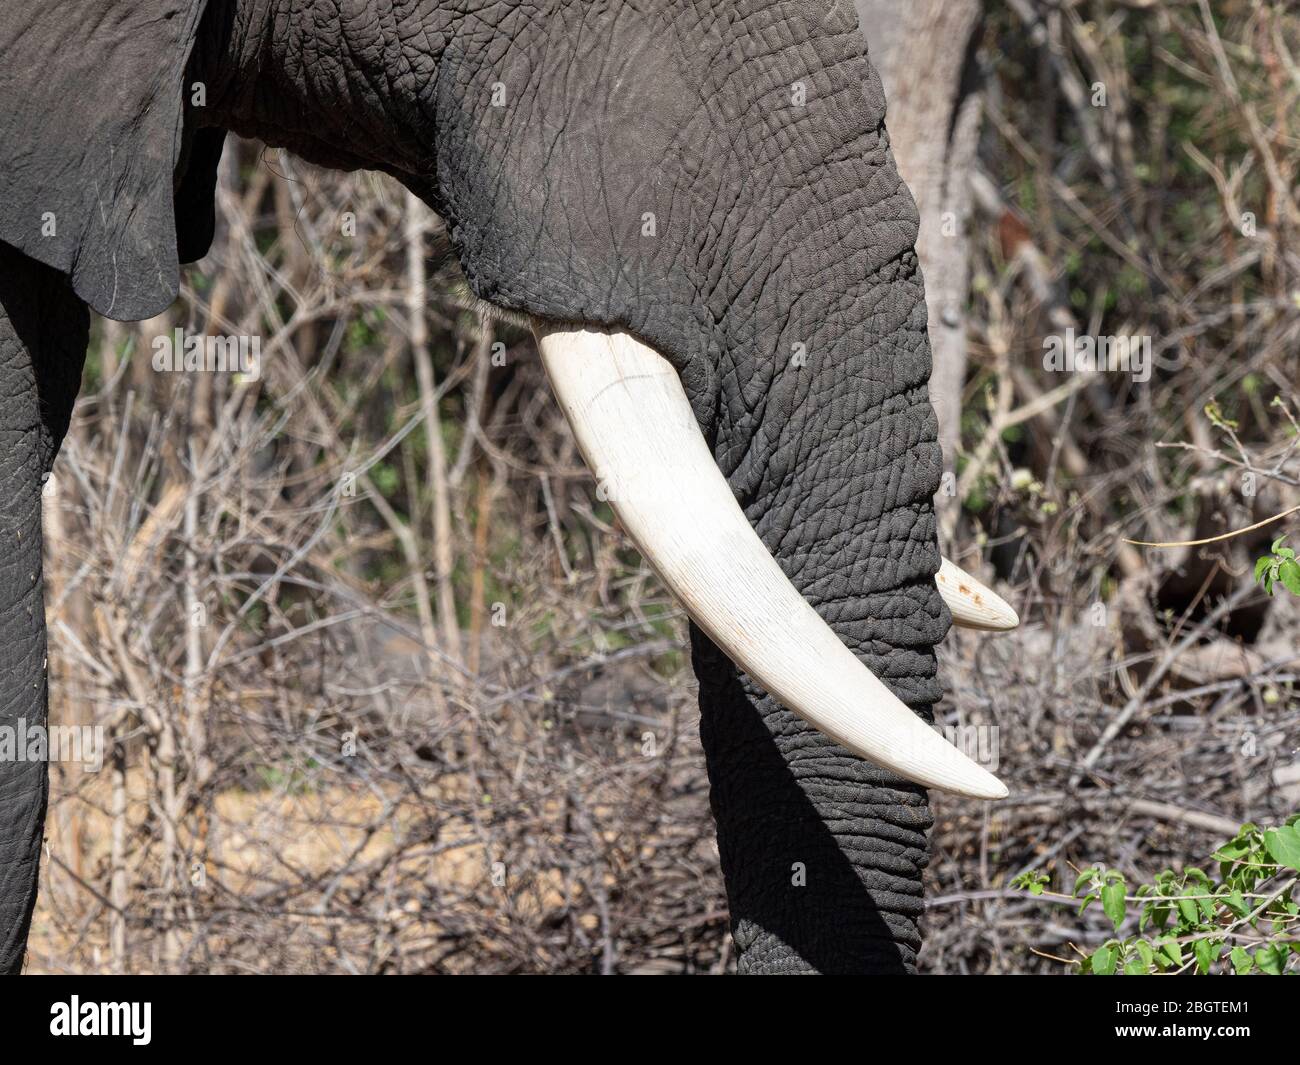 Elefante africano, Loxodonta africana, dettaglio di zenzero nel Parco Nazionale di Chobe, Botswana, Sudafrica. Foto Stock